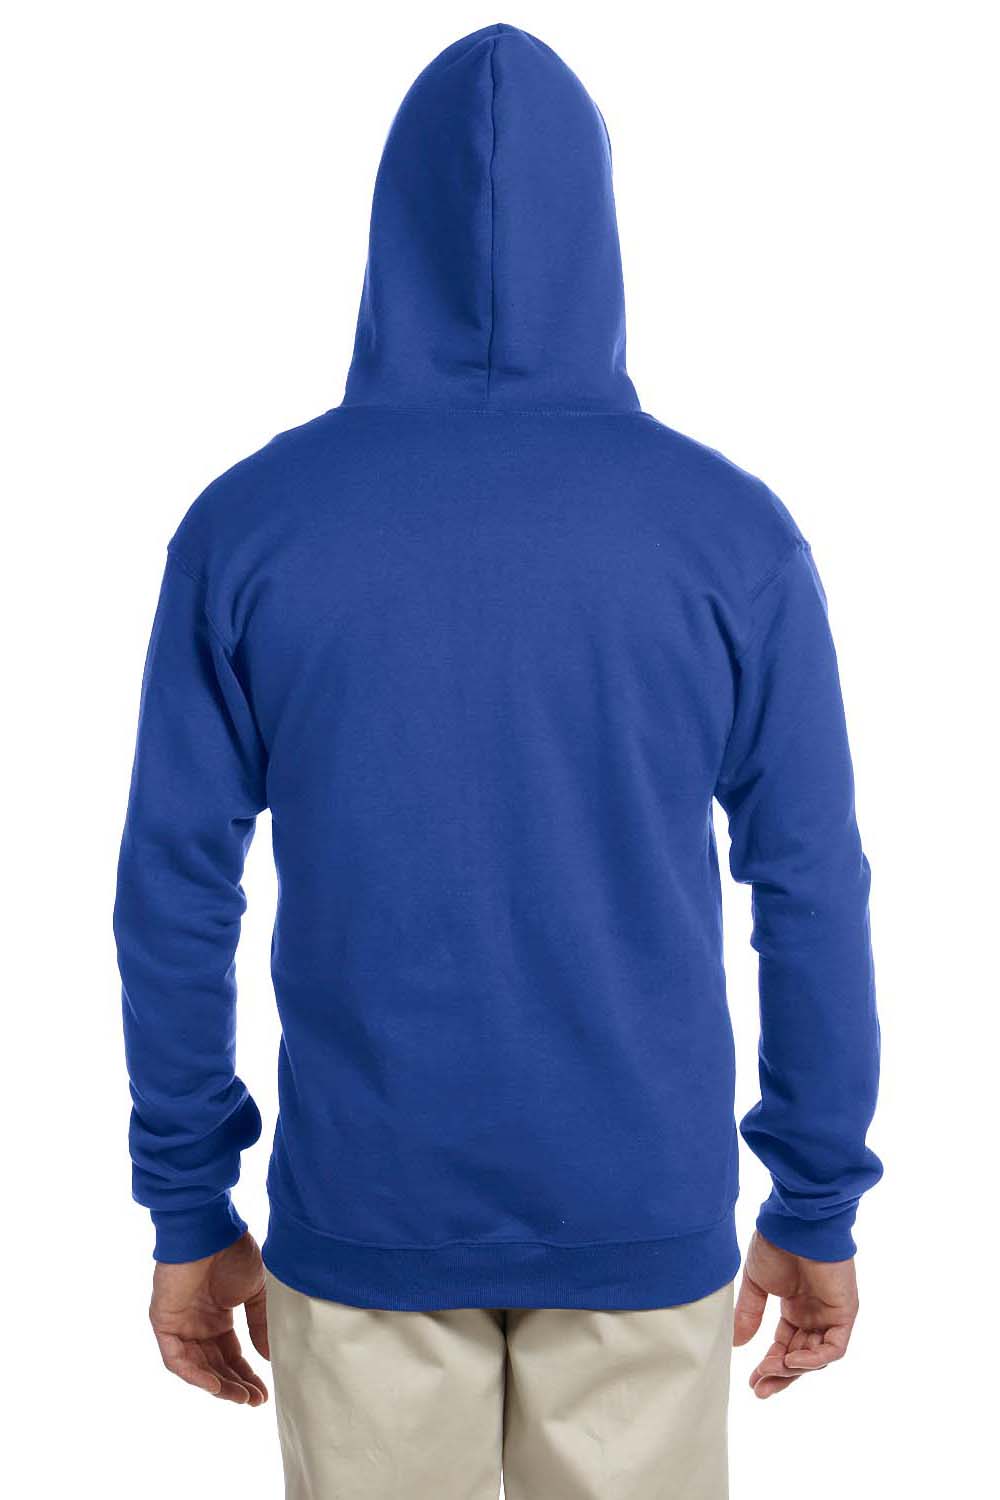 Jerzees 993 Mens NuBlend Fleece Full Zip Hooded Sweatshirt Hoodie Royal Blue Back